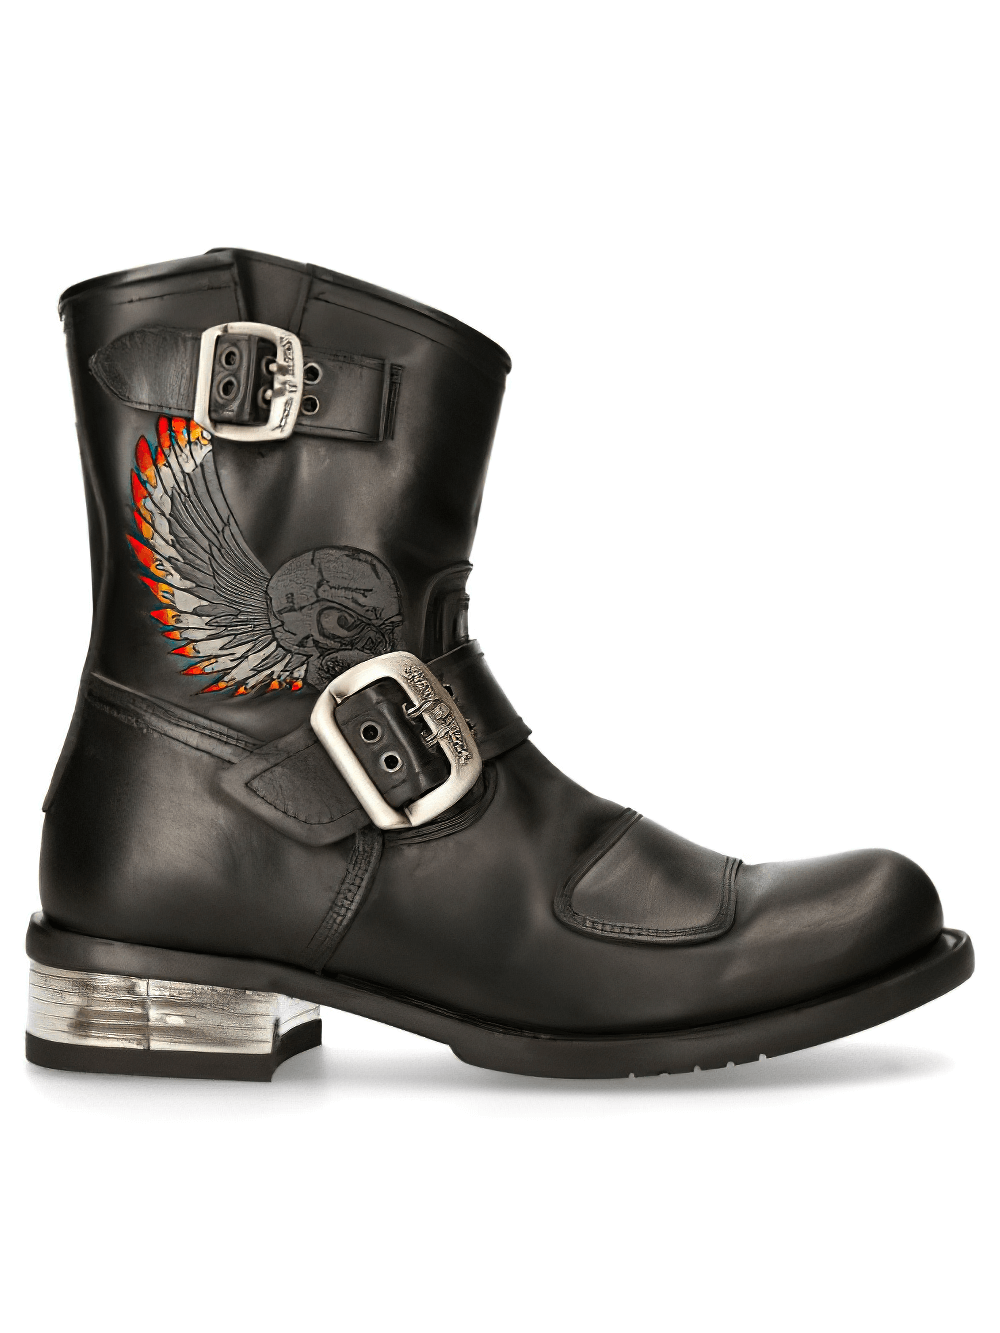 NEW ROCK Rugged Black Buckled Biker Boots for Men